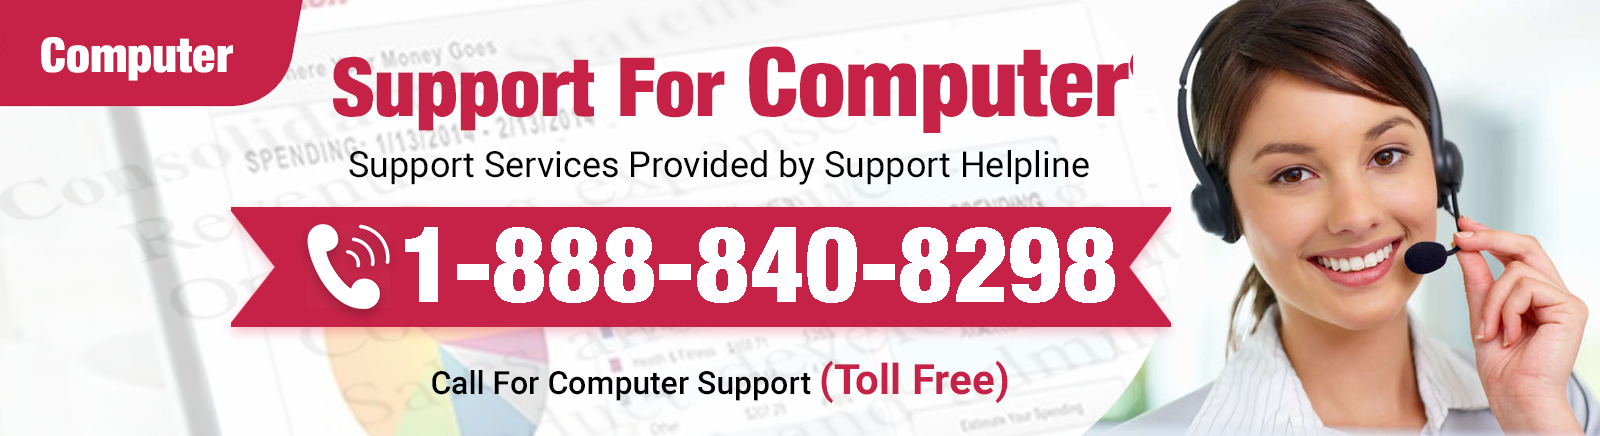 Support Helpline